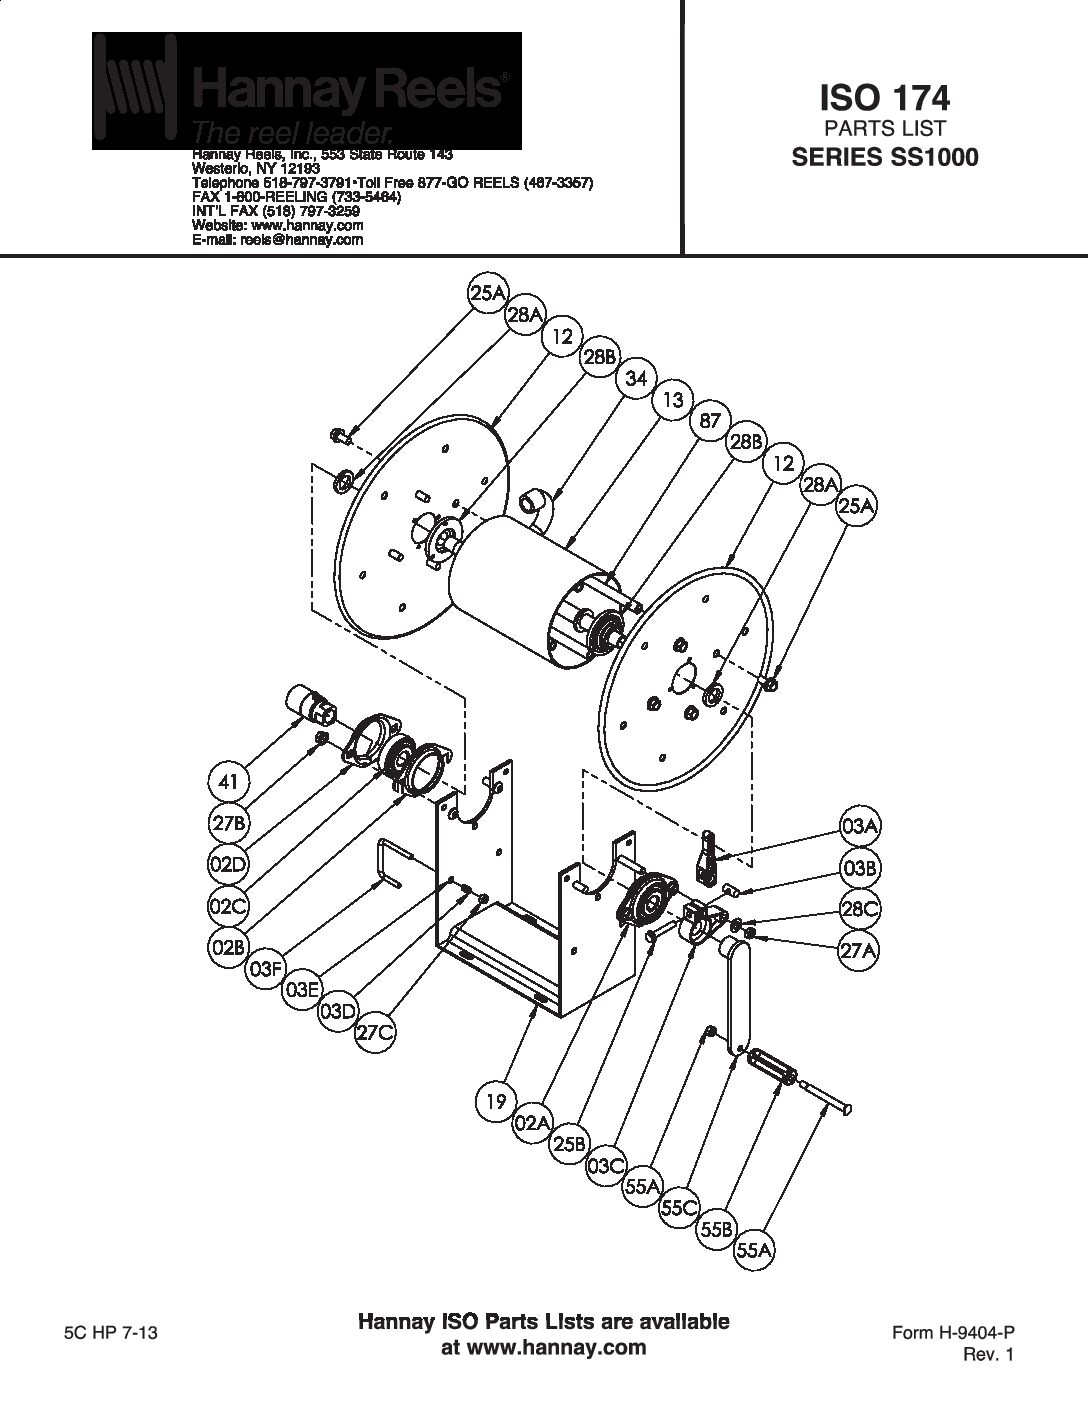 Hannay Stainless Steel 1000 Series manual Hose Reels parts breakdown